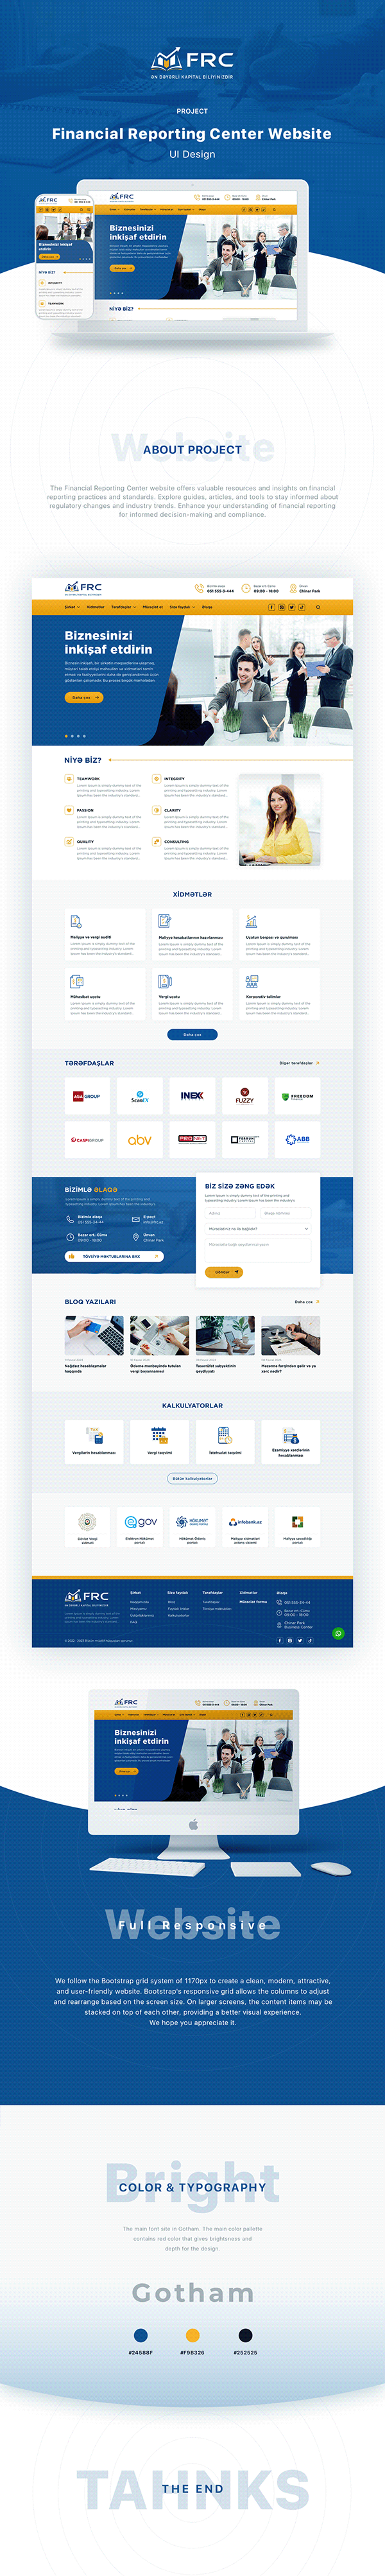 Financial Reporting Center - Website UI Design